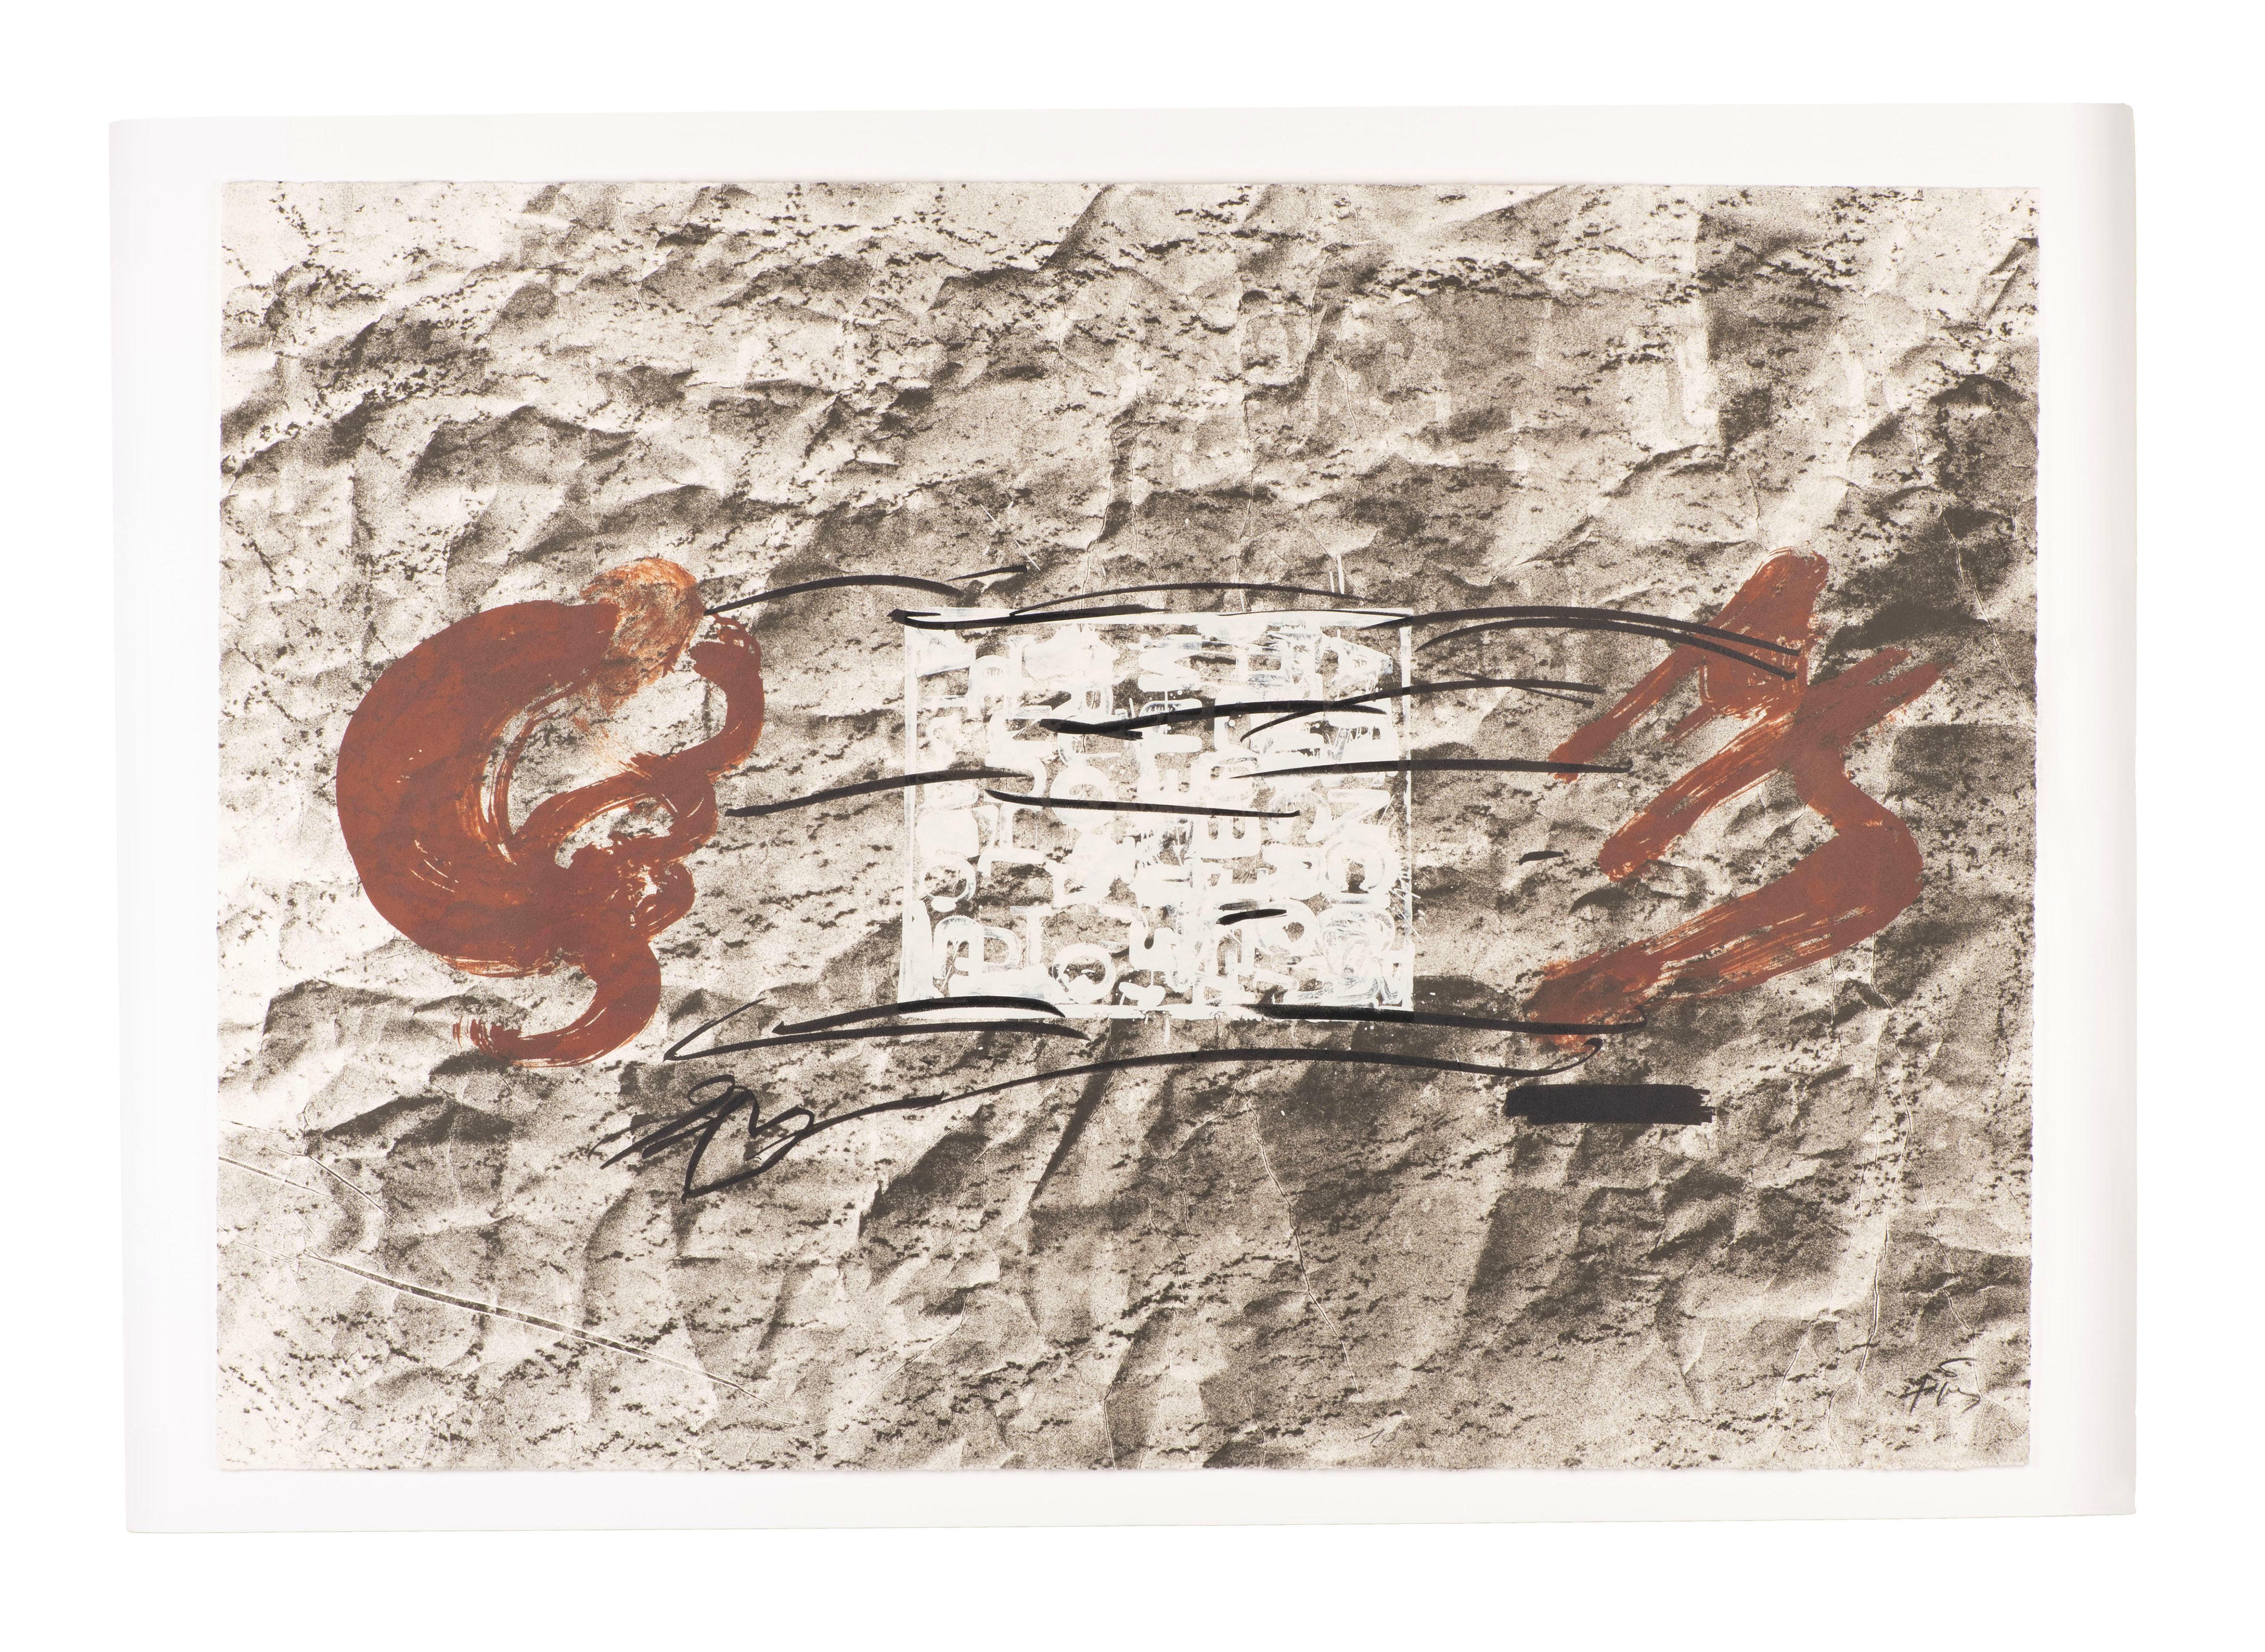 Antoni Tàpies verband reiche konzeptionelle Anliegen mit Materialexperimenten und monumentalen Maßstäben. Sein Werk wurde auf unterschiedliche Weise von Künstlern der frühen Moderne wie Paul Klee und Joan Miró sowie von Künstlern des Informel wie